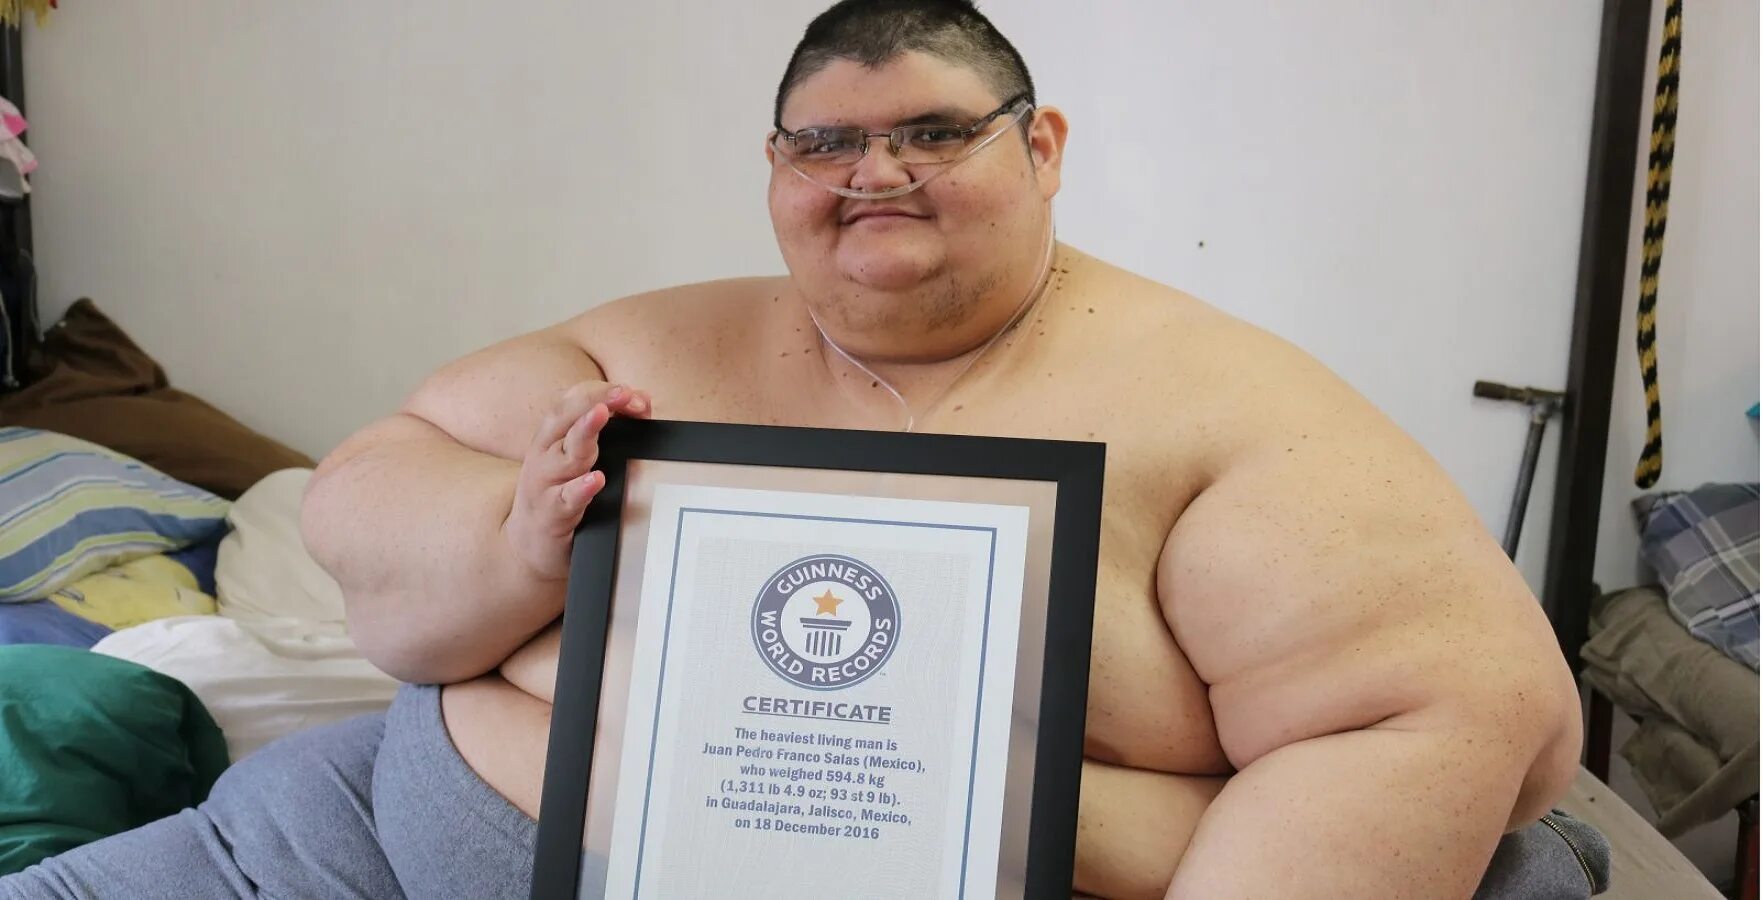 Немного толстый человек. Хуан Педро Франко 600 кг. Хуан Педро Франко Салас 2018. Хуан Педро самый толстый человек в мире.